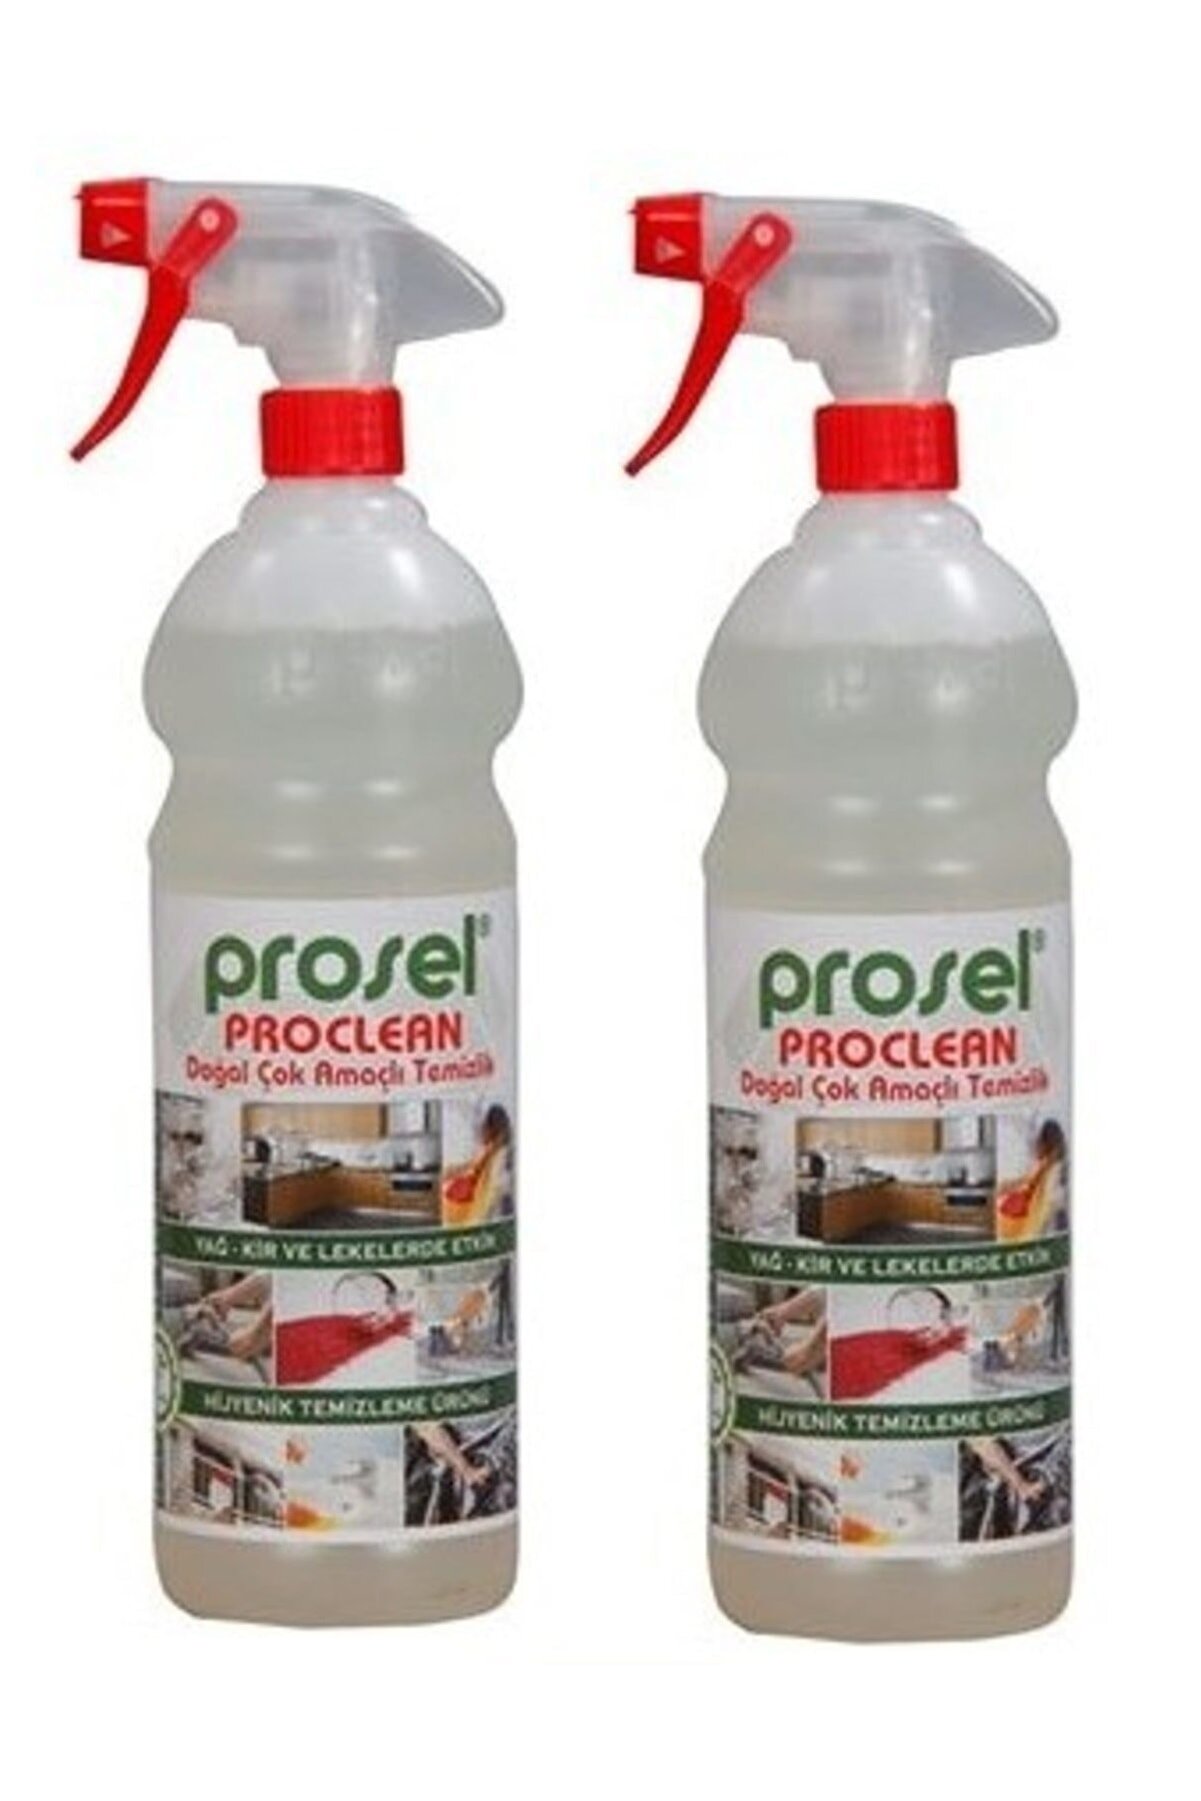 Prosel Proclean Doğal Amaçlı Temizlik Yağ Kir Ve Lekelerde Etkin Hijyenik Temizleme Ürünü 1 Ltx2 Ad